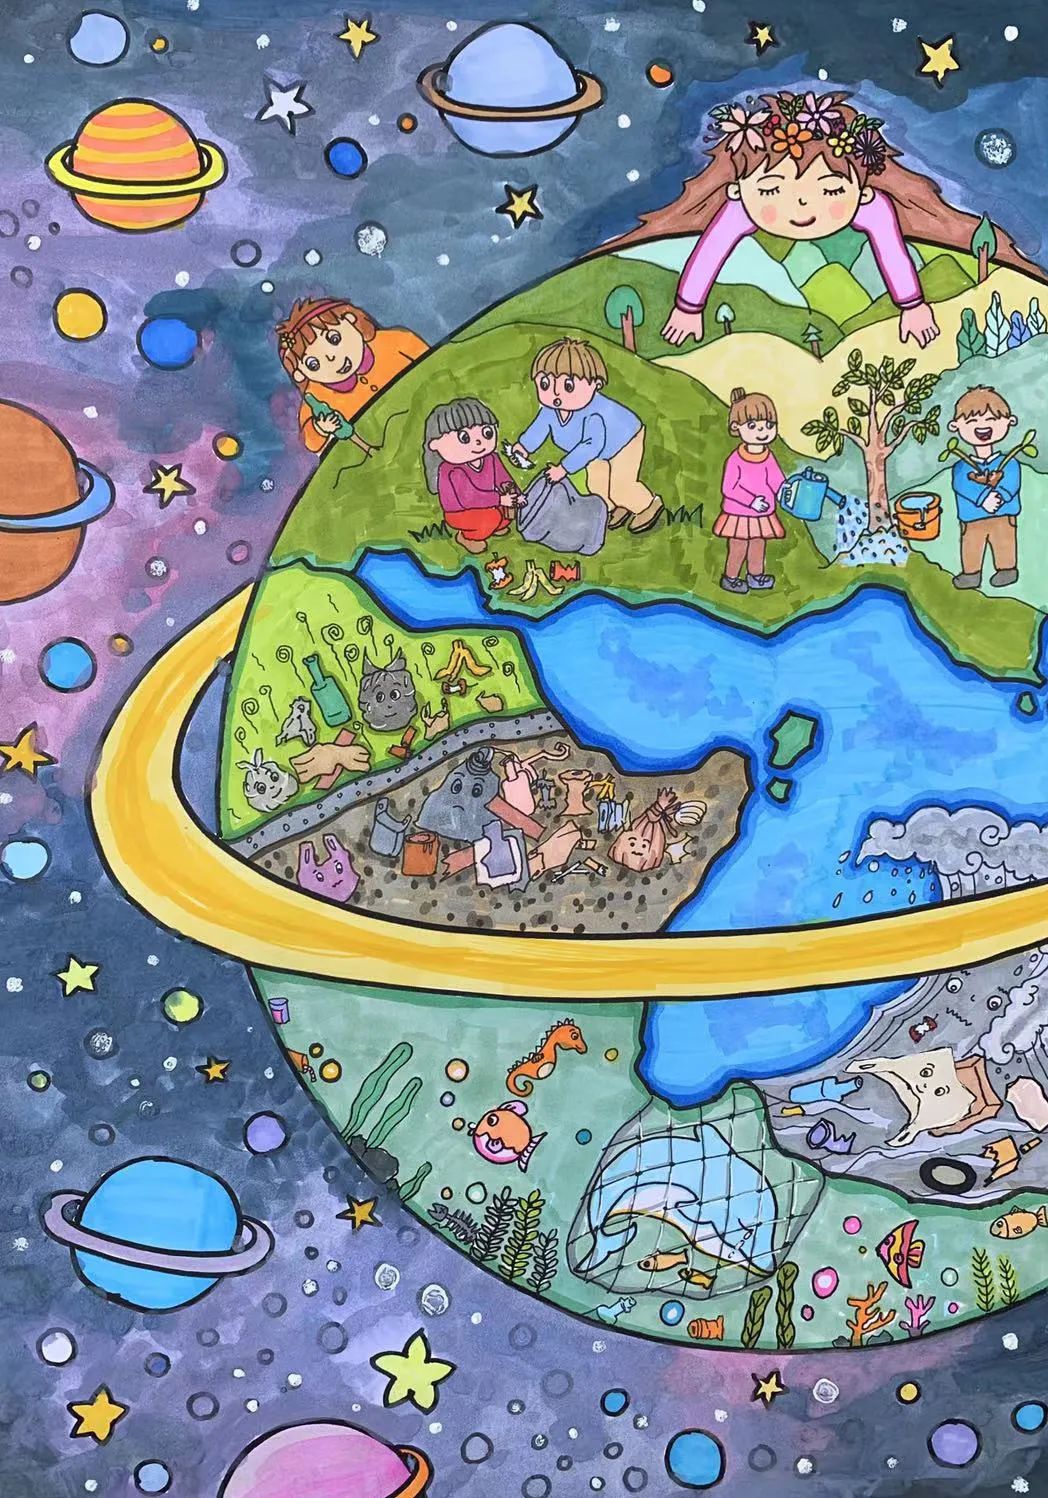 67世界地球日儿童画公益大赛结果出炉